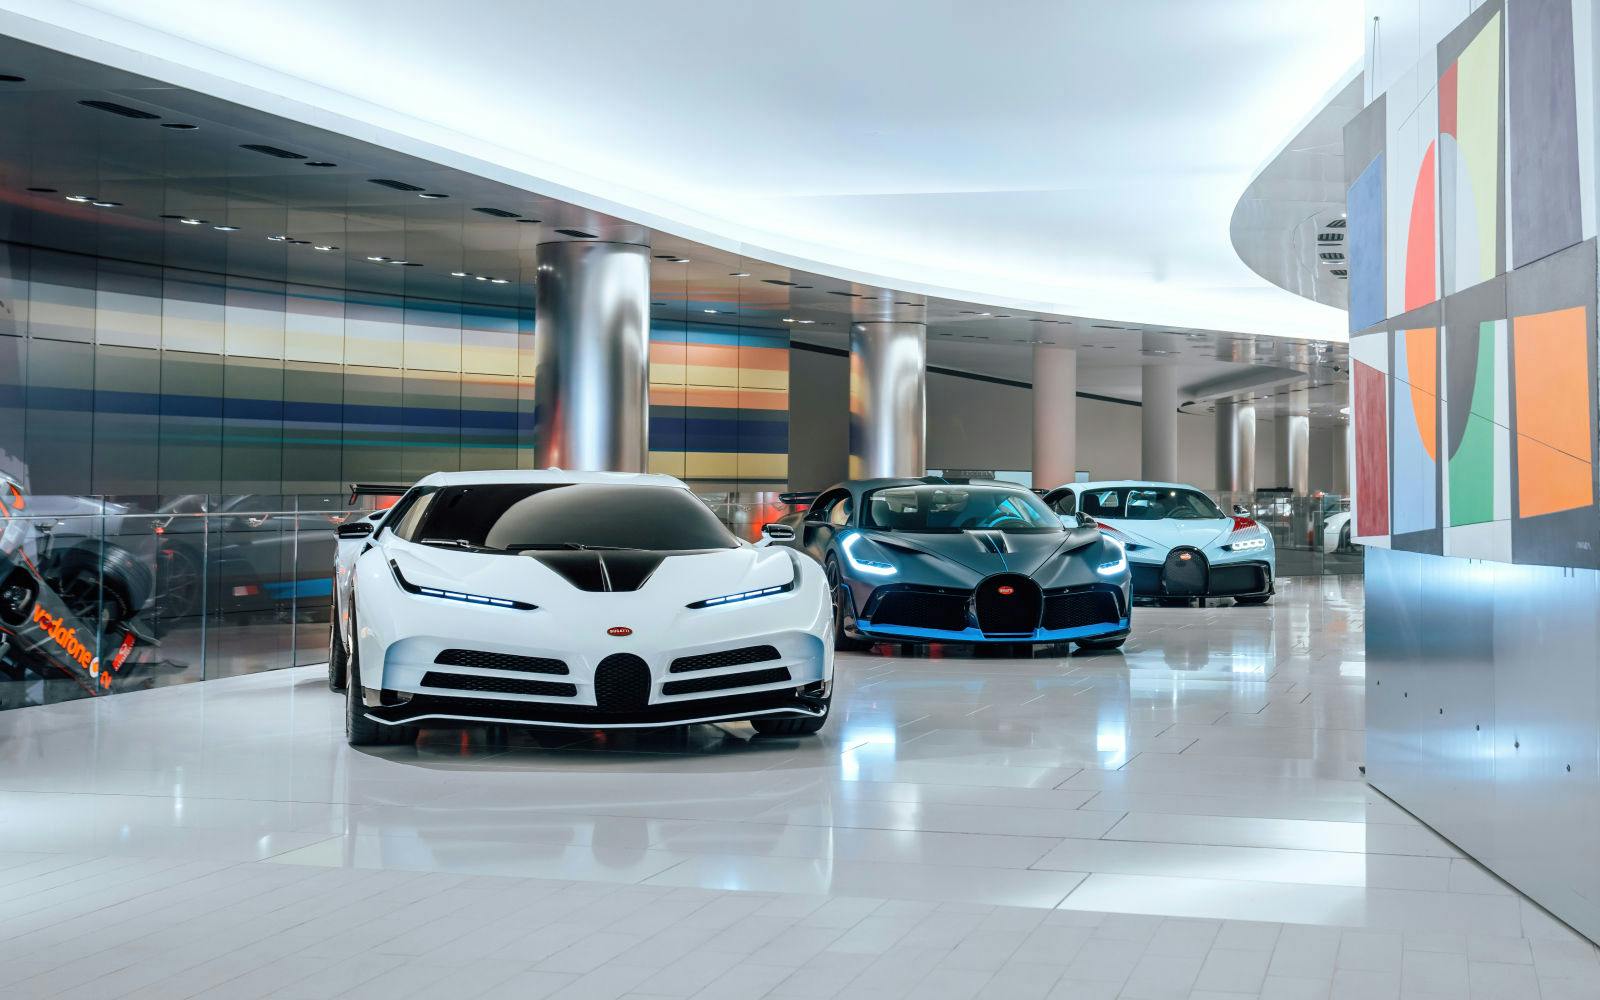 Die Autosammlung des Fürsten von Monaco beherbergt bis zum 28. April eine Ausstellung einiger der exklusivsten Bugatti-Hypersportwagen.